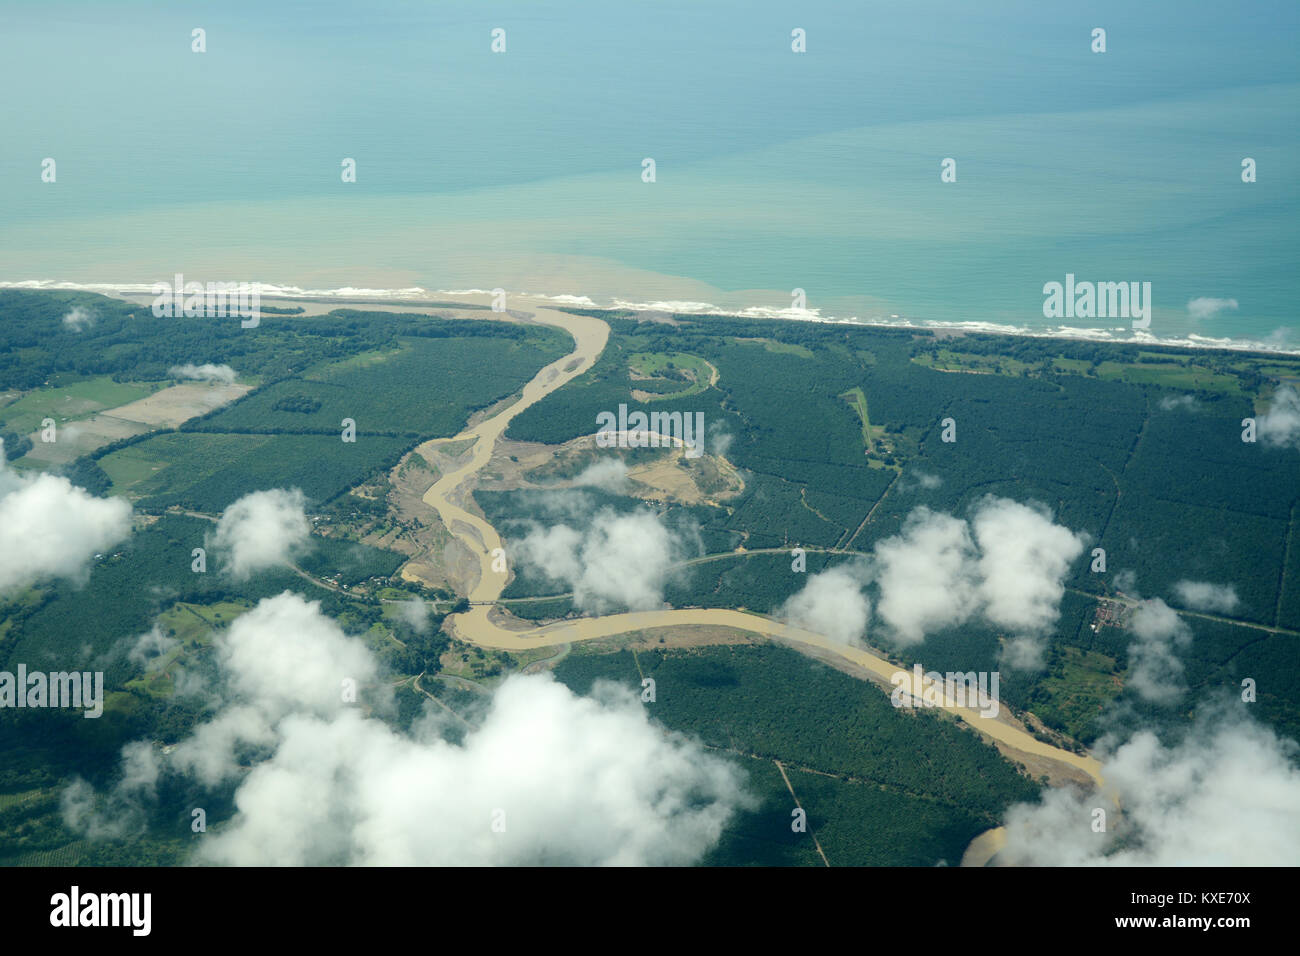 Une vue aérienne de l'embouchure du Rio réunion Savegre la côte du Pacifique, dans la province de Puntarenas, dans le sud du Costa Rica. Banque D'Images